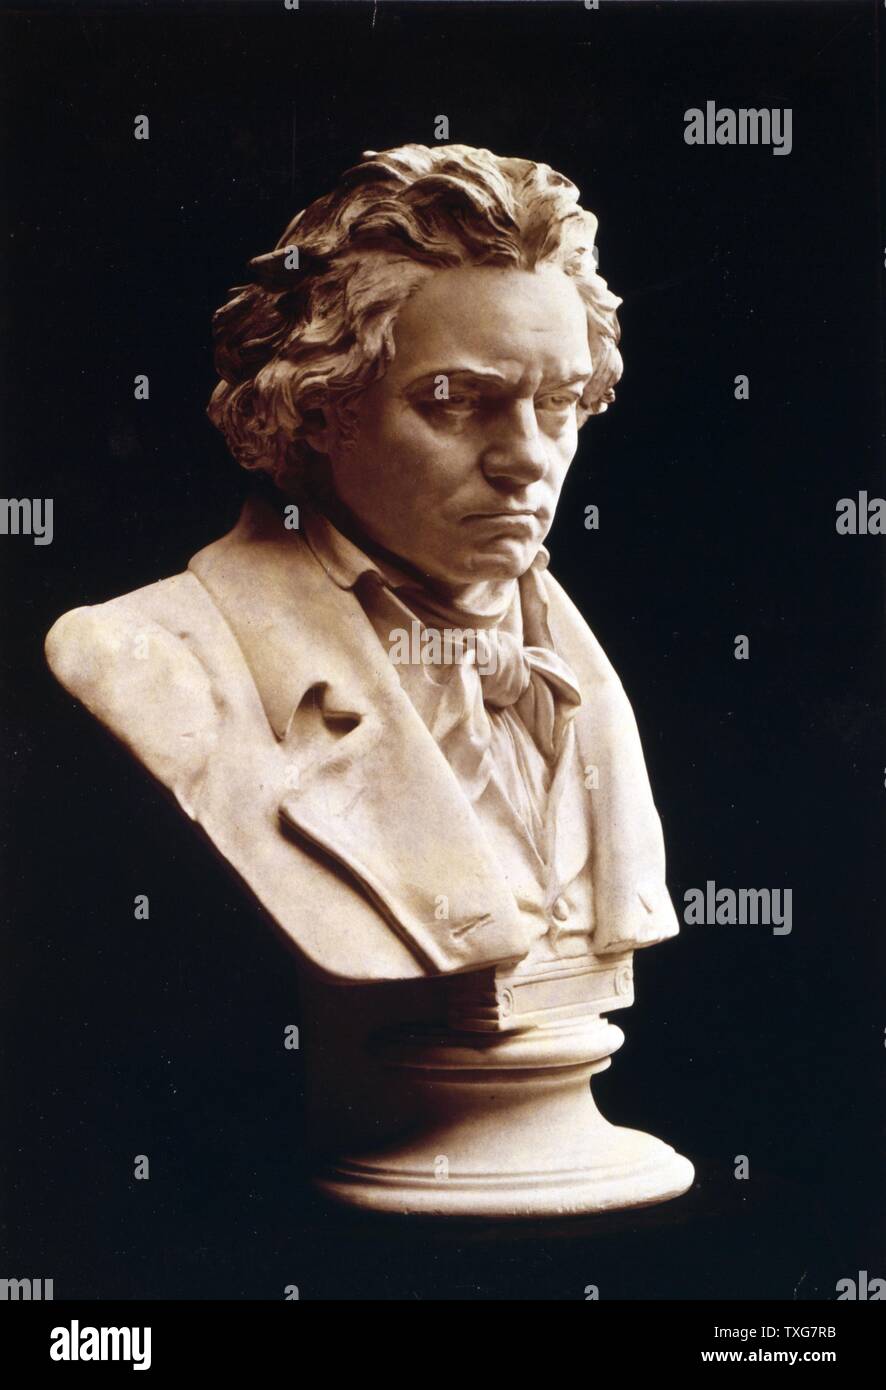 Busto di Ludwig van Beethoven, tedesco del compositore e pianista. Uno dei più influenti compositori occidentali la cui musica colmato il classico e romantico periodi Foto Stock